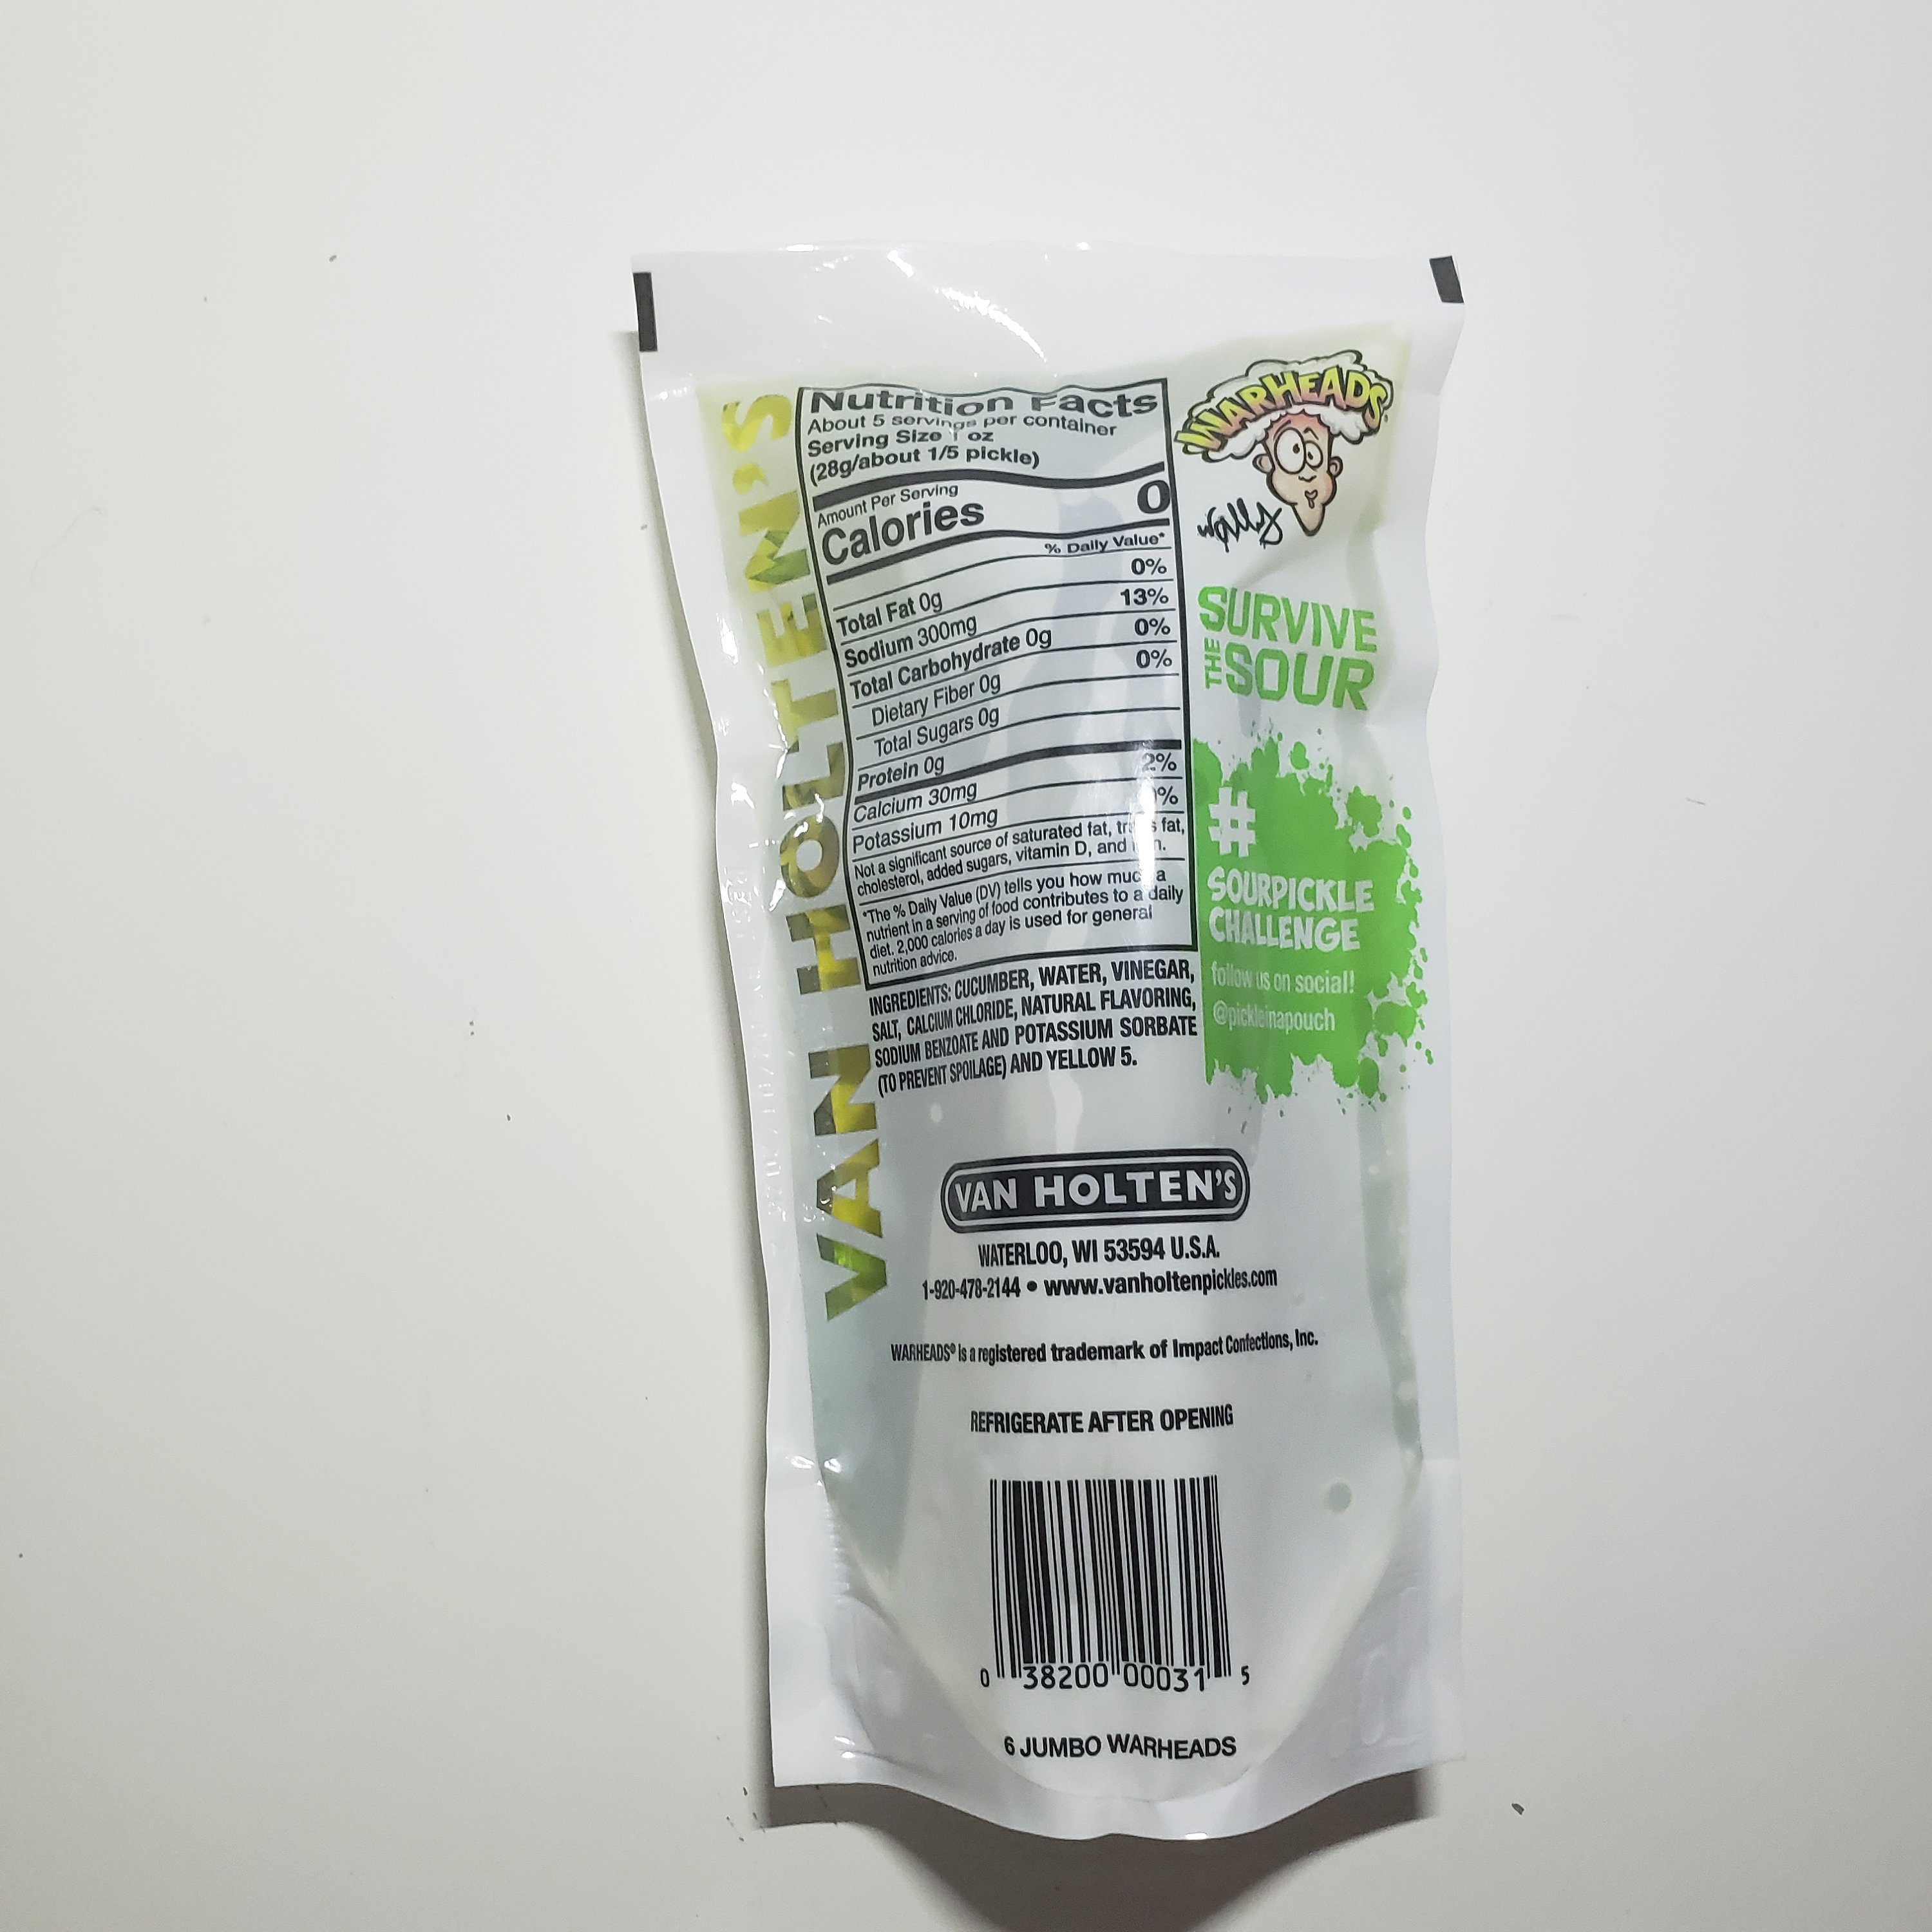 Extreme Sour Pickle Kit – Amor a la Mexicana Mix